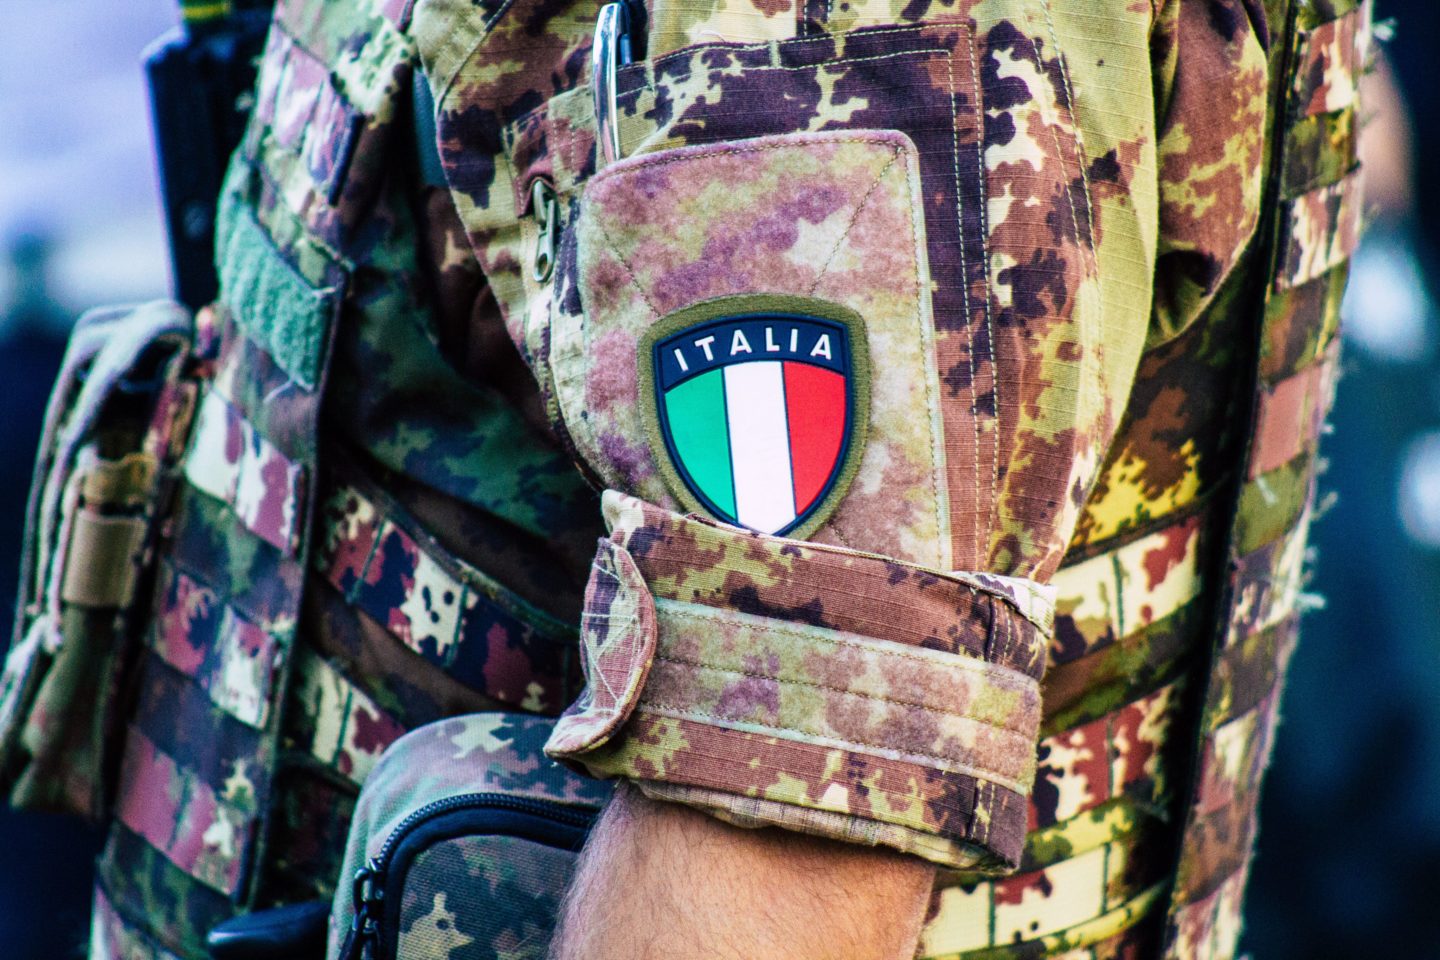 ภารกิจของกองทัพอิตาลี: ผลิตกัญชาให้มากขึ้น